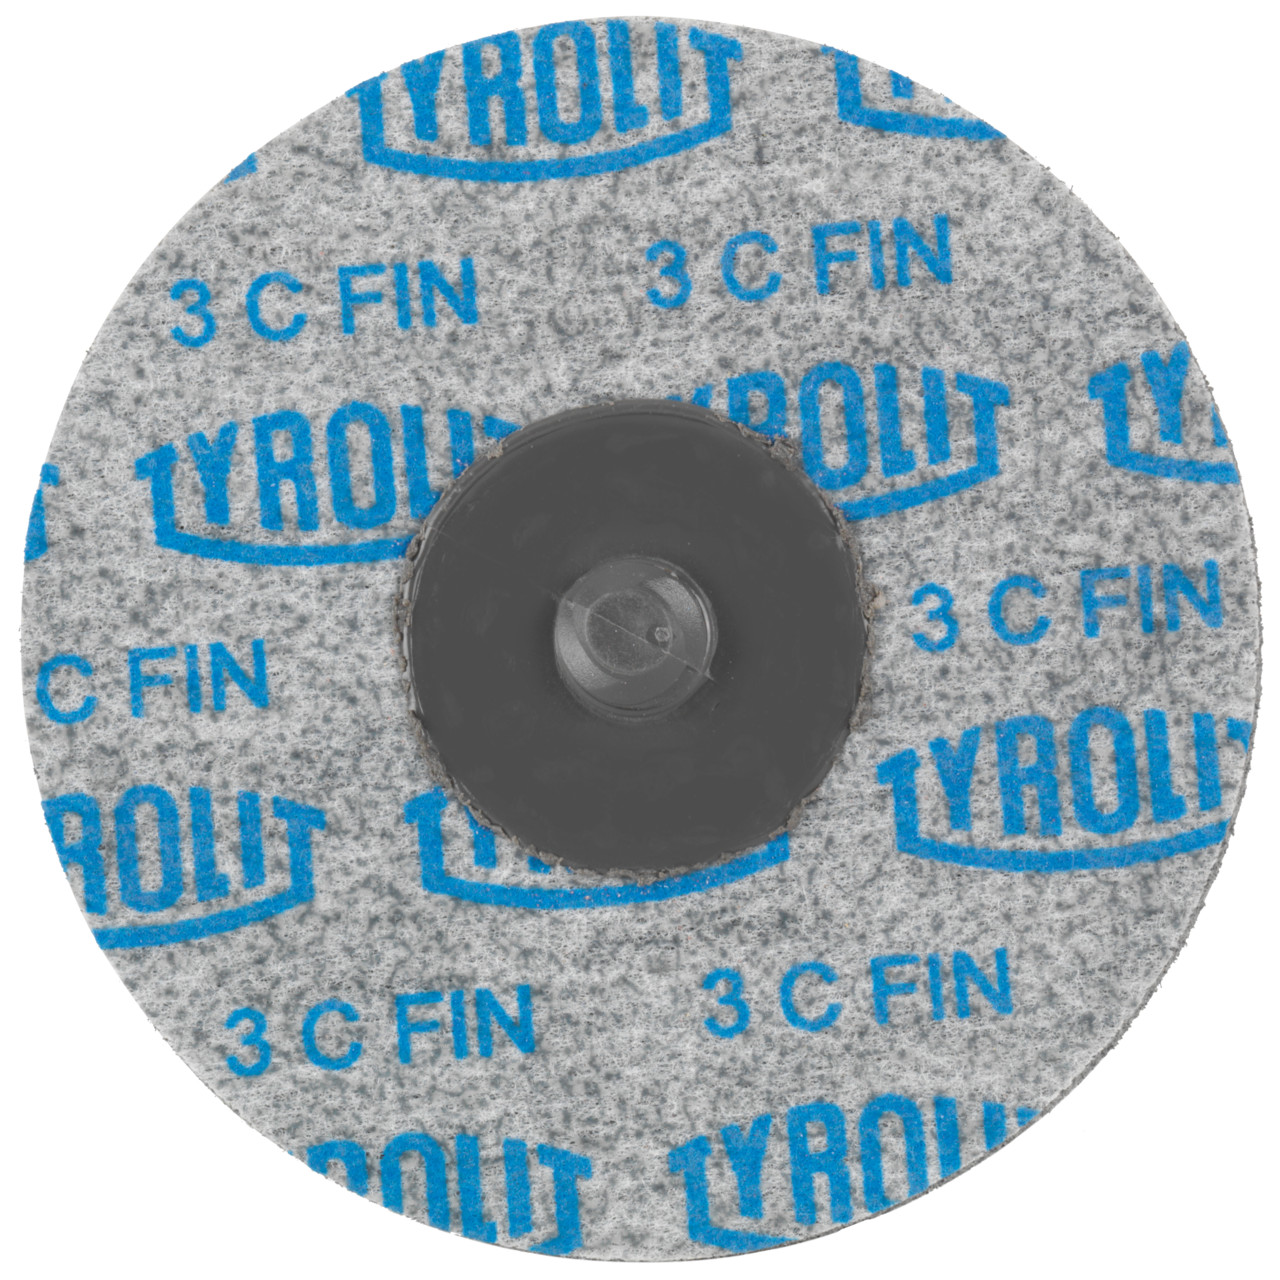 Tyrolit Discos compactos prensados DISCO DE CAMBIO RÁPIDO Dimensión 76xR De uso universal, 3 C FEIN, forma: QDISC, Art. 34190138